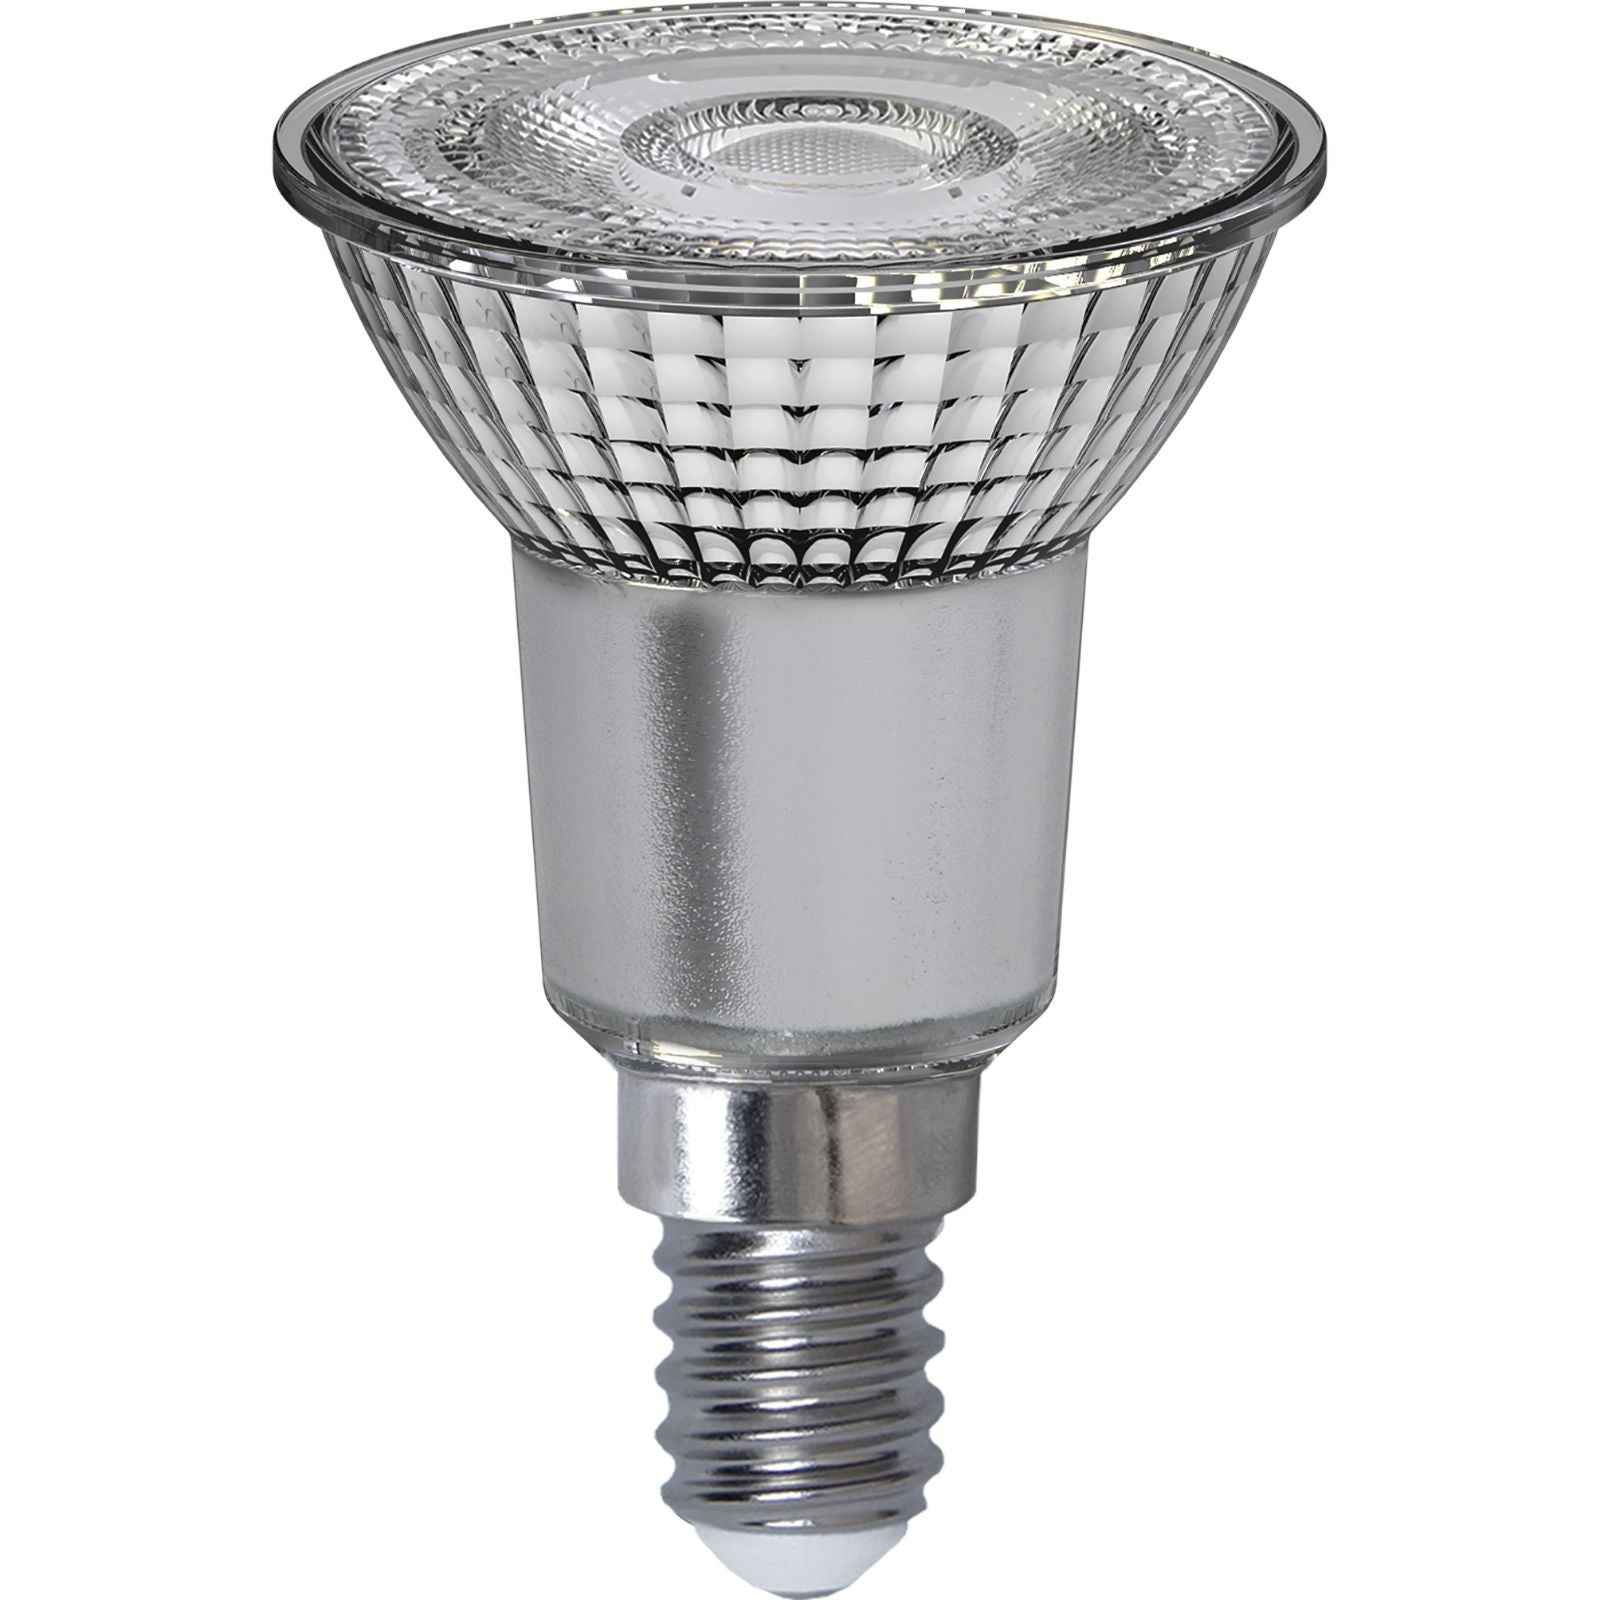 led-lampa-e14-par16-spotlight-glass-3-step-347-50